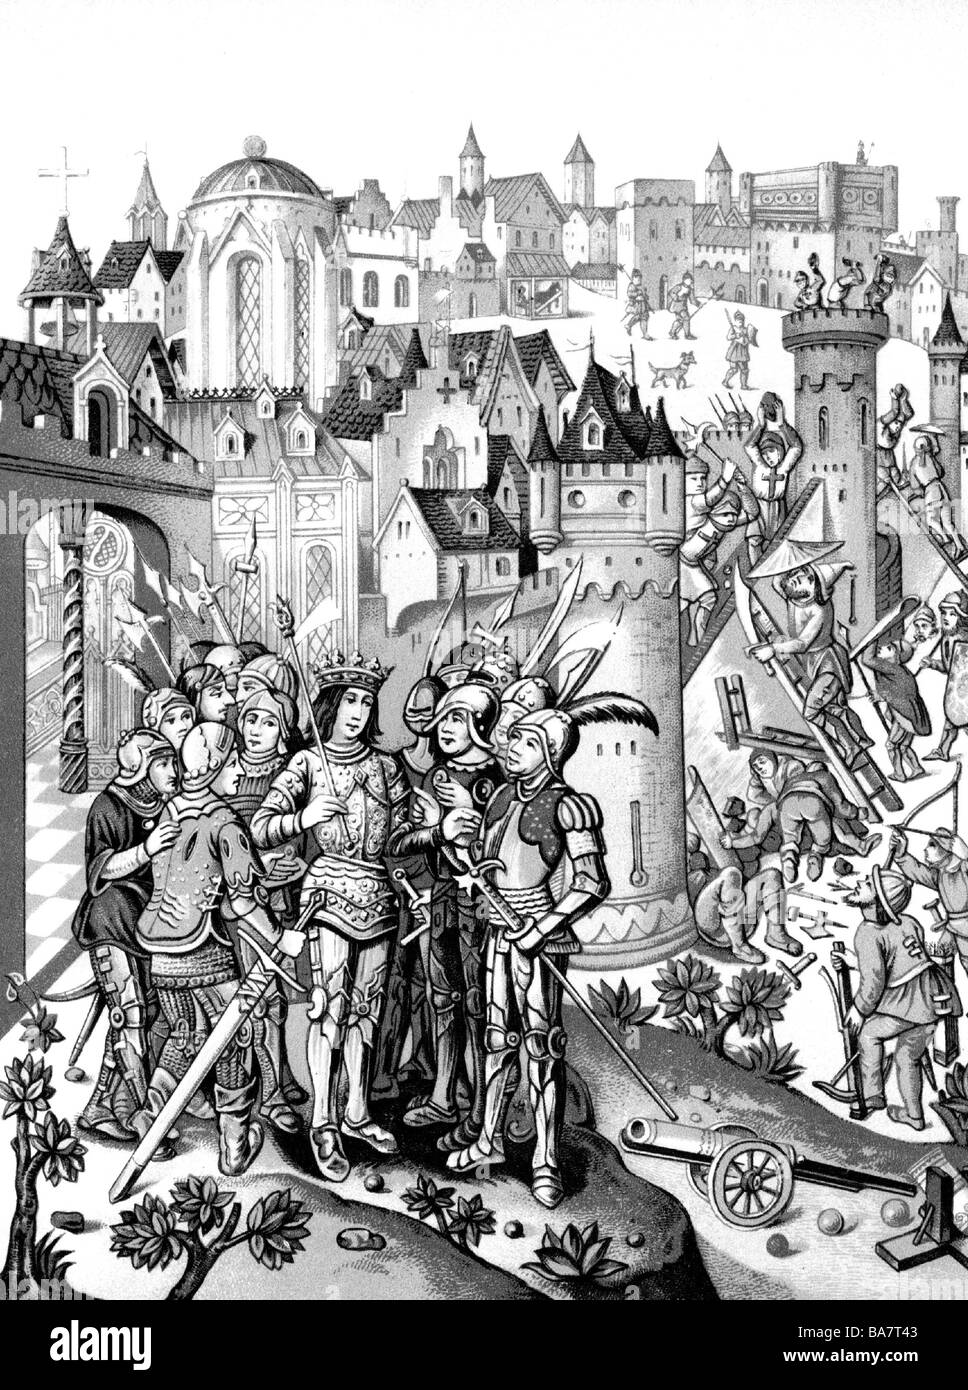 Karl VI. "Die Mad", 3.12.1368 - 21.10.1422, König von Frankreich 1380 - 1422, belagert eine von den Burgundern verteidigte Stadt, Chromolithograph nach Miniatur aus den "Chroniques" von Monstrelet, ca. 1500, Bibliotheke Ambroise Firmin-Didot, Stockfoto